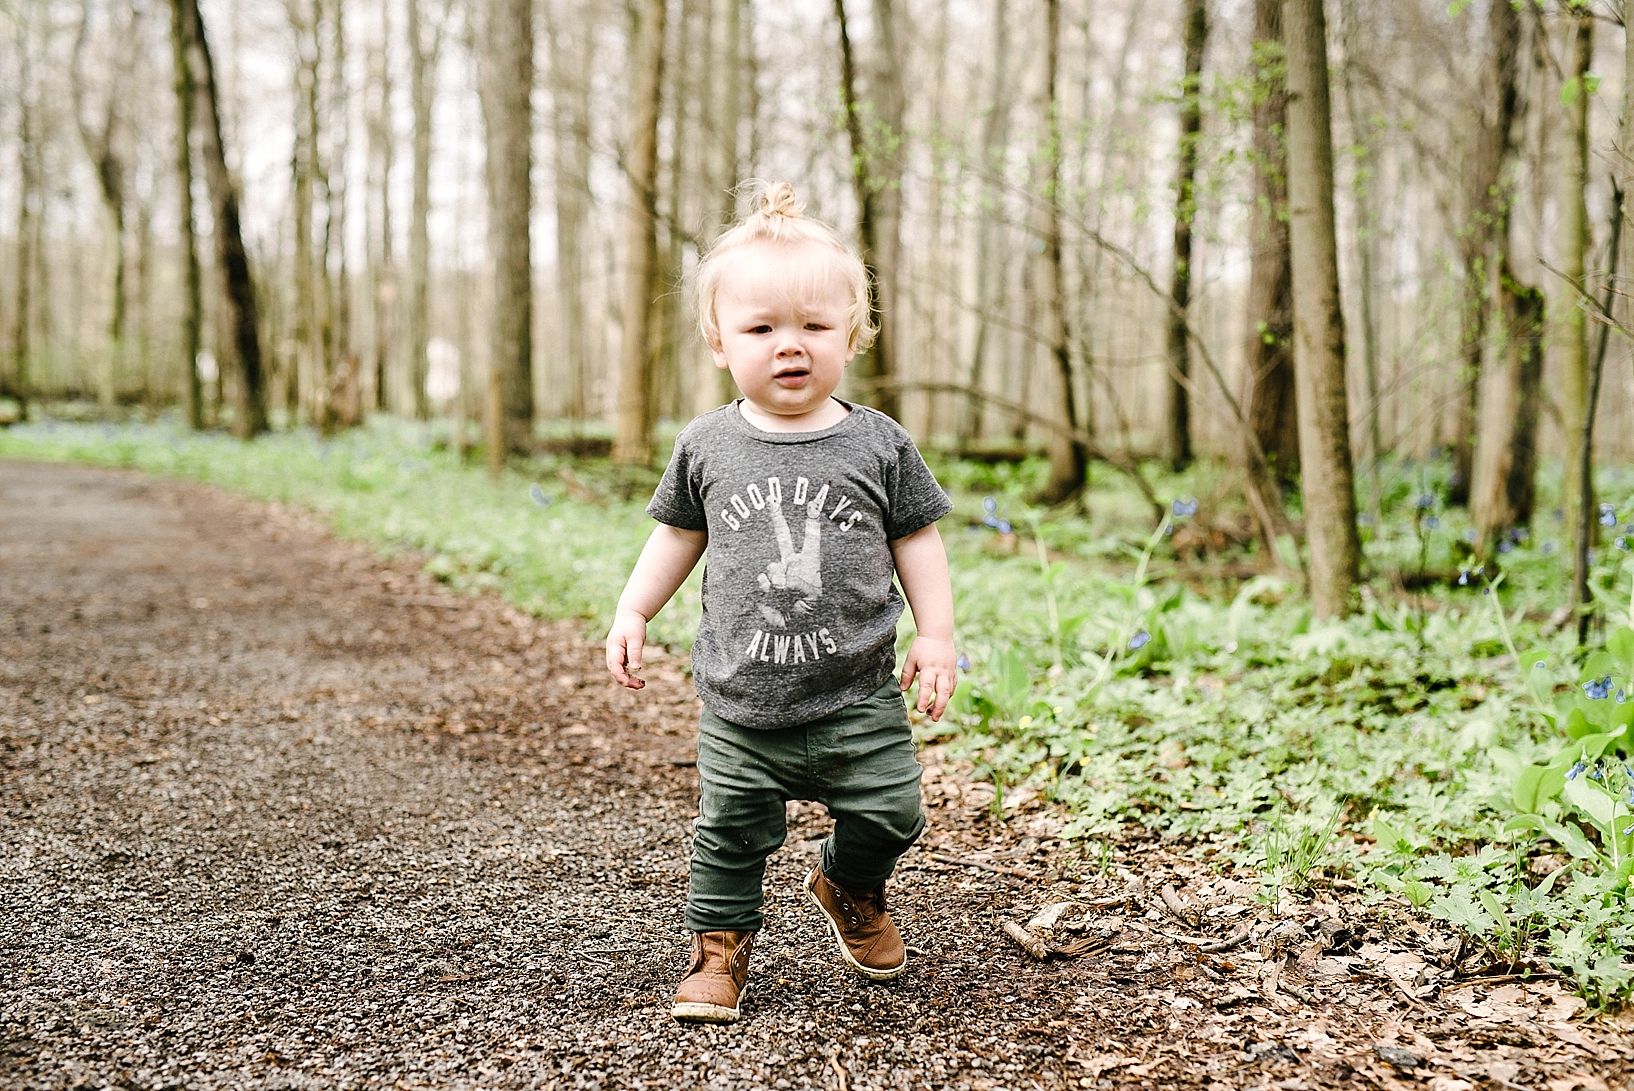 hipster toddler boy wearing man bun and Good Vibes tshirt walking through woods in spring